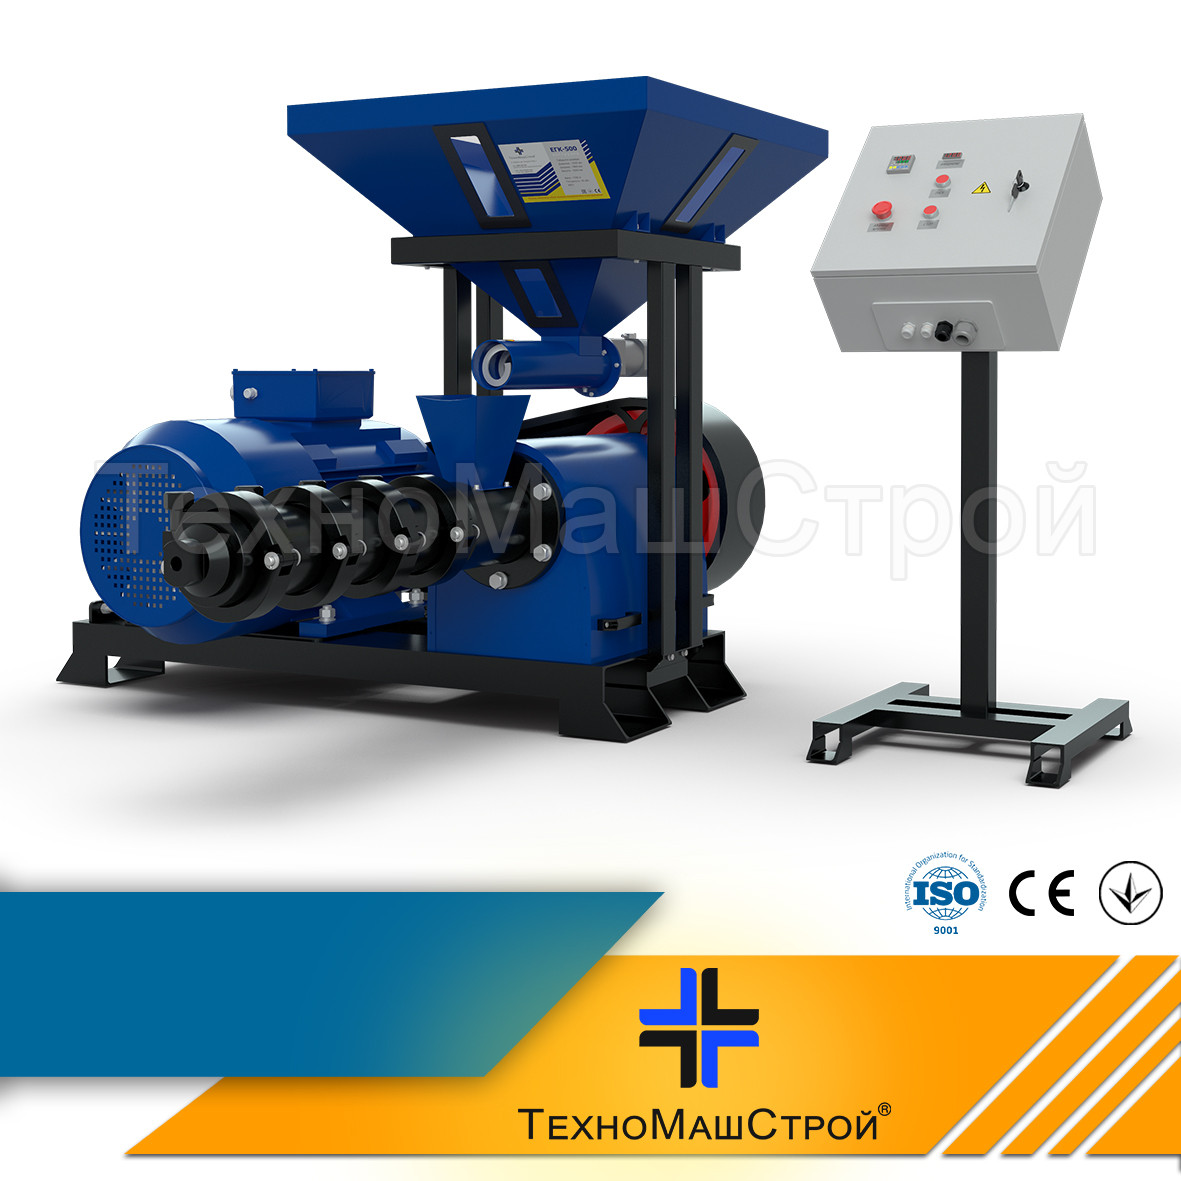 Екструдер ЕГК-500 продуктивність 500-600 кг/година, 55 кВт